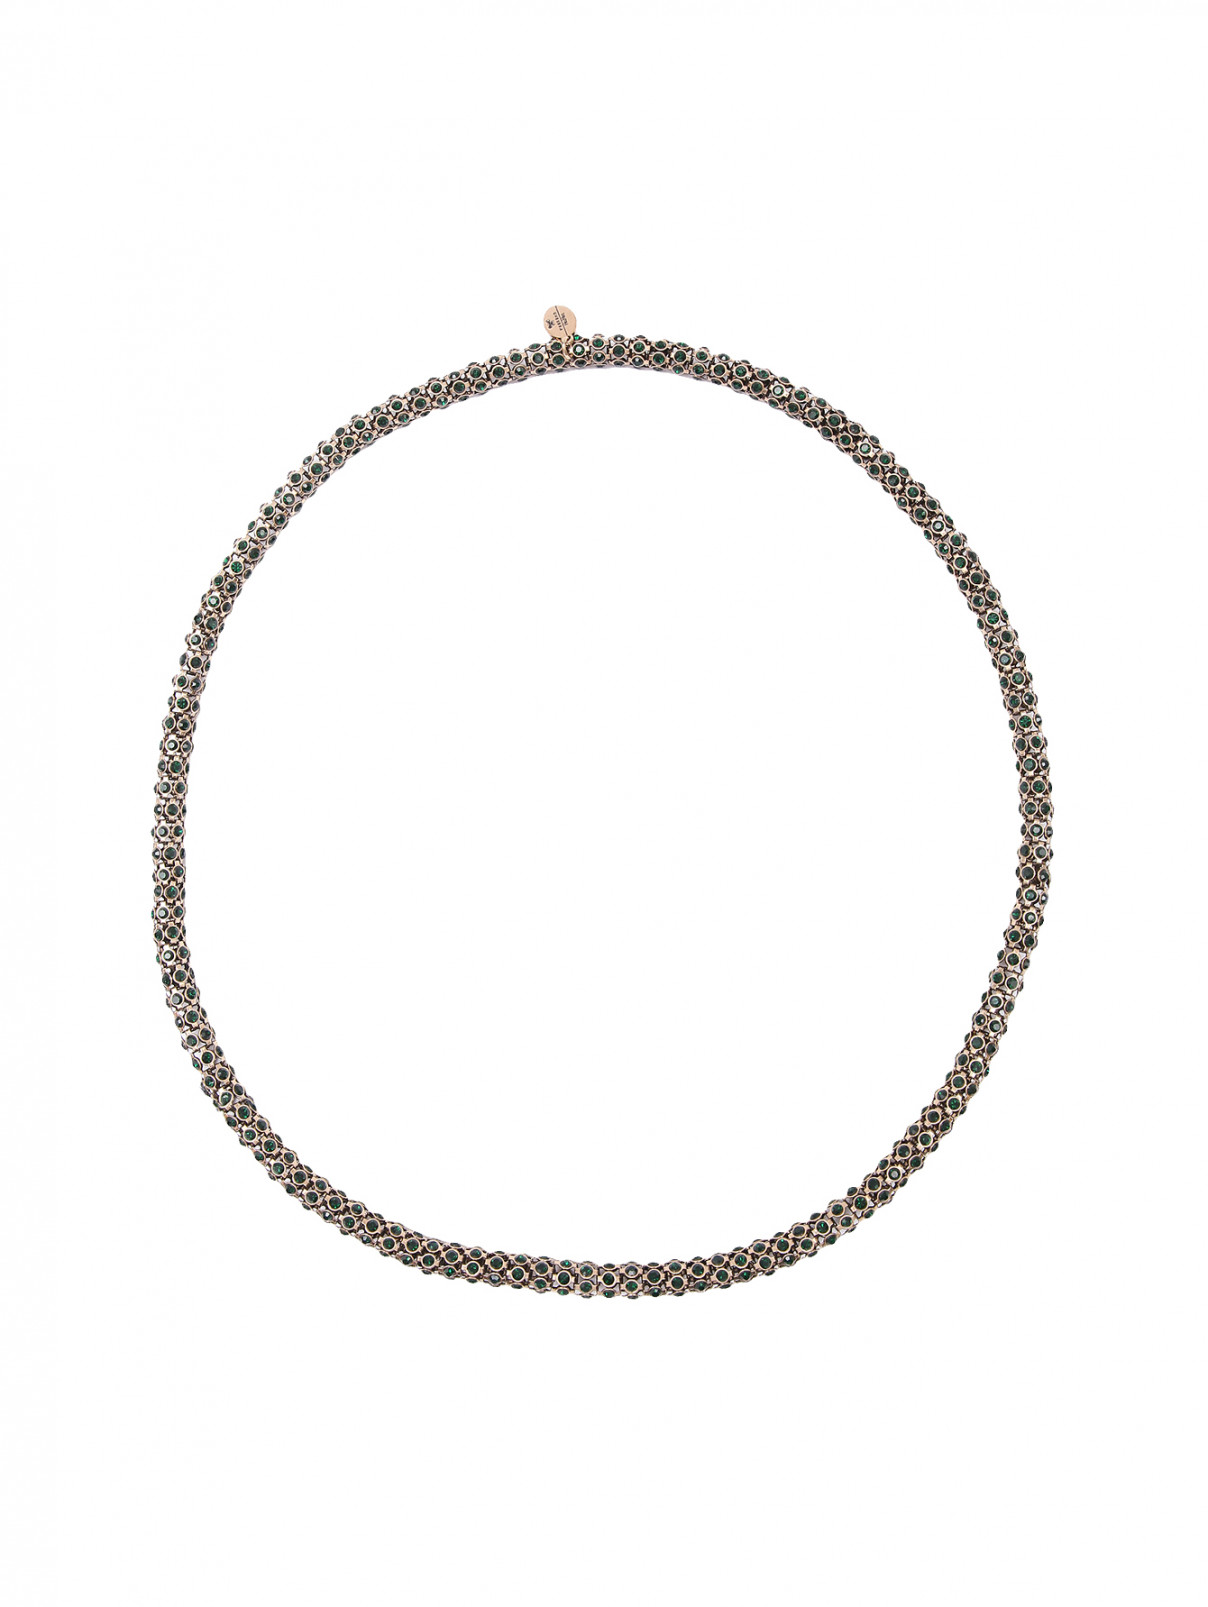 Ожерелье из металла с кристаллами Weekend Max Mara  –  Общий вид  – Цвет:  Зеленый